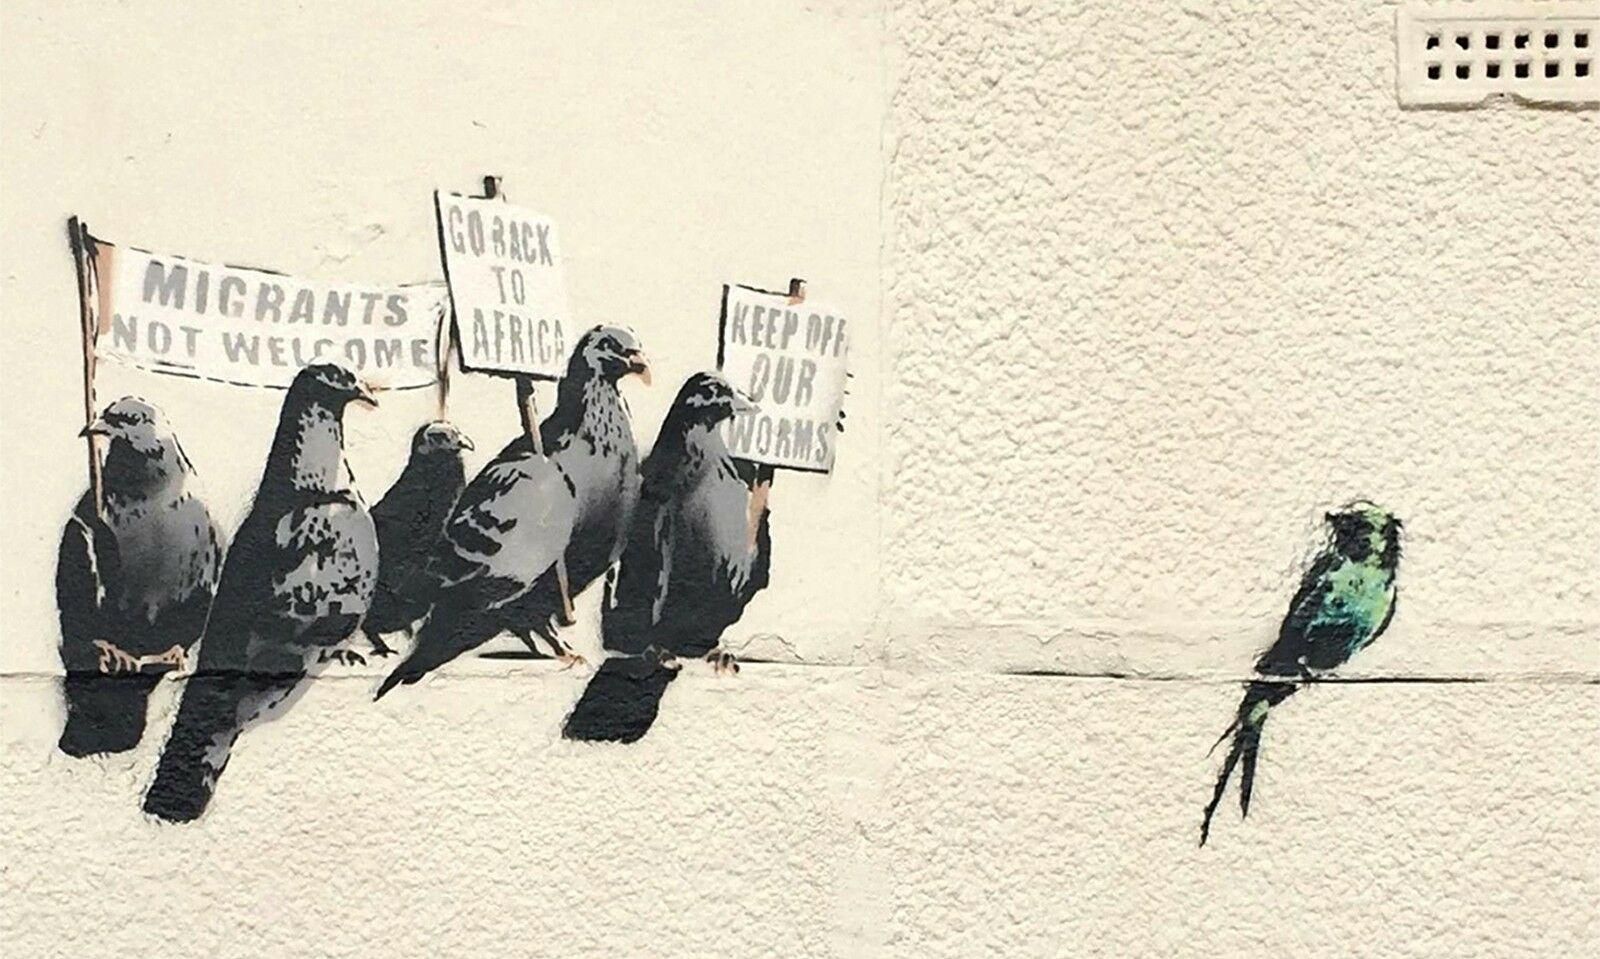 Banksy Rue Graffiti Pigeons Art Urbain Home Décor Peint À La Main Hd  Imprimer Peinture À Lhuile Sur Toile Wall Art Toile Photos 200218 Du 10,53  € | Dhgate Pertaining To Pigeon Wall Art (View 10 of 15)